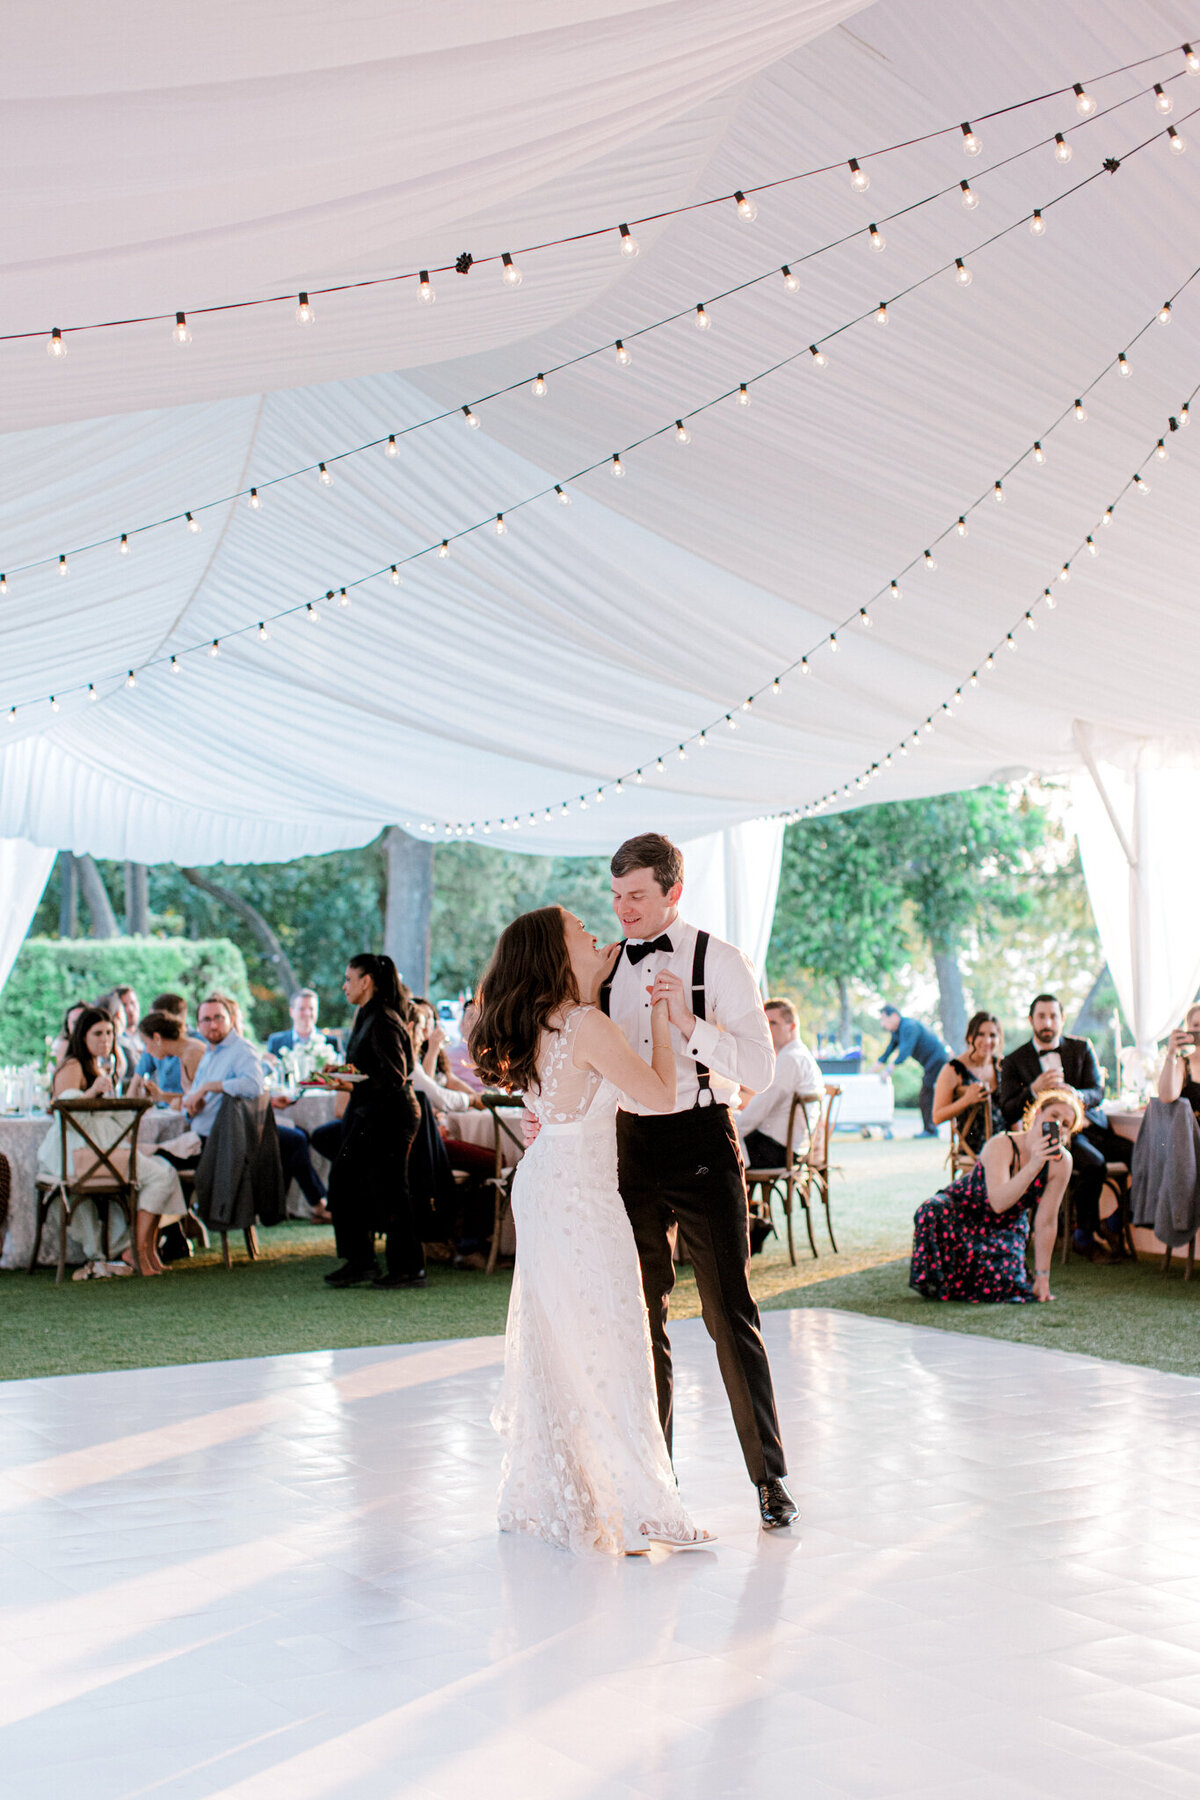 Gena & Matt's Wedding at the Dallas Arboretum | Dallas Wedding Photographer | Sami Kathryn Photography-241